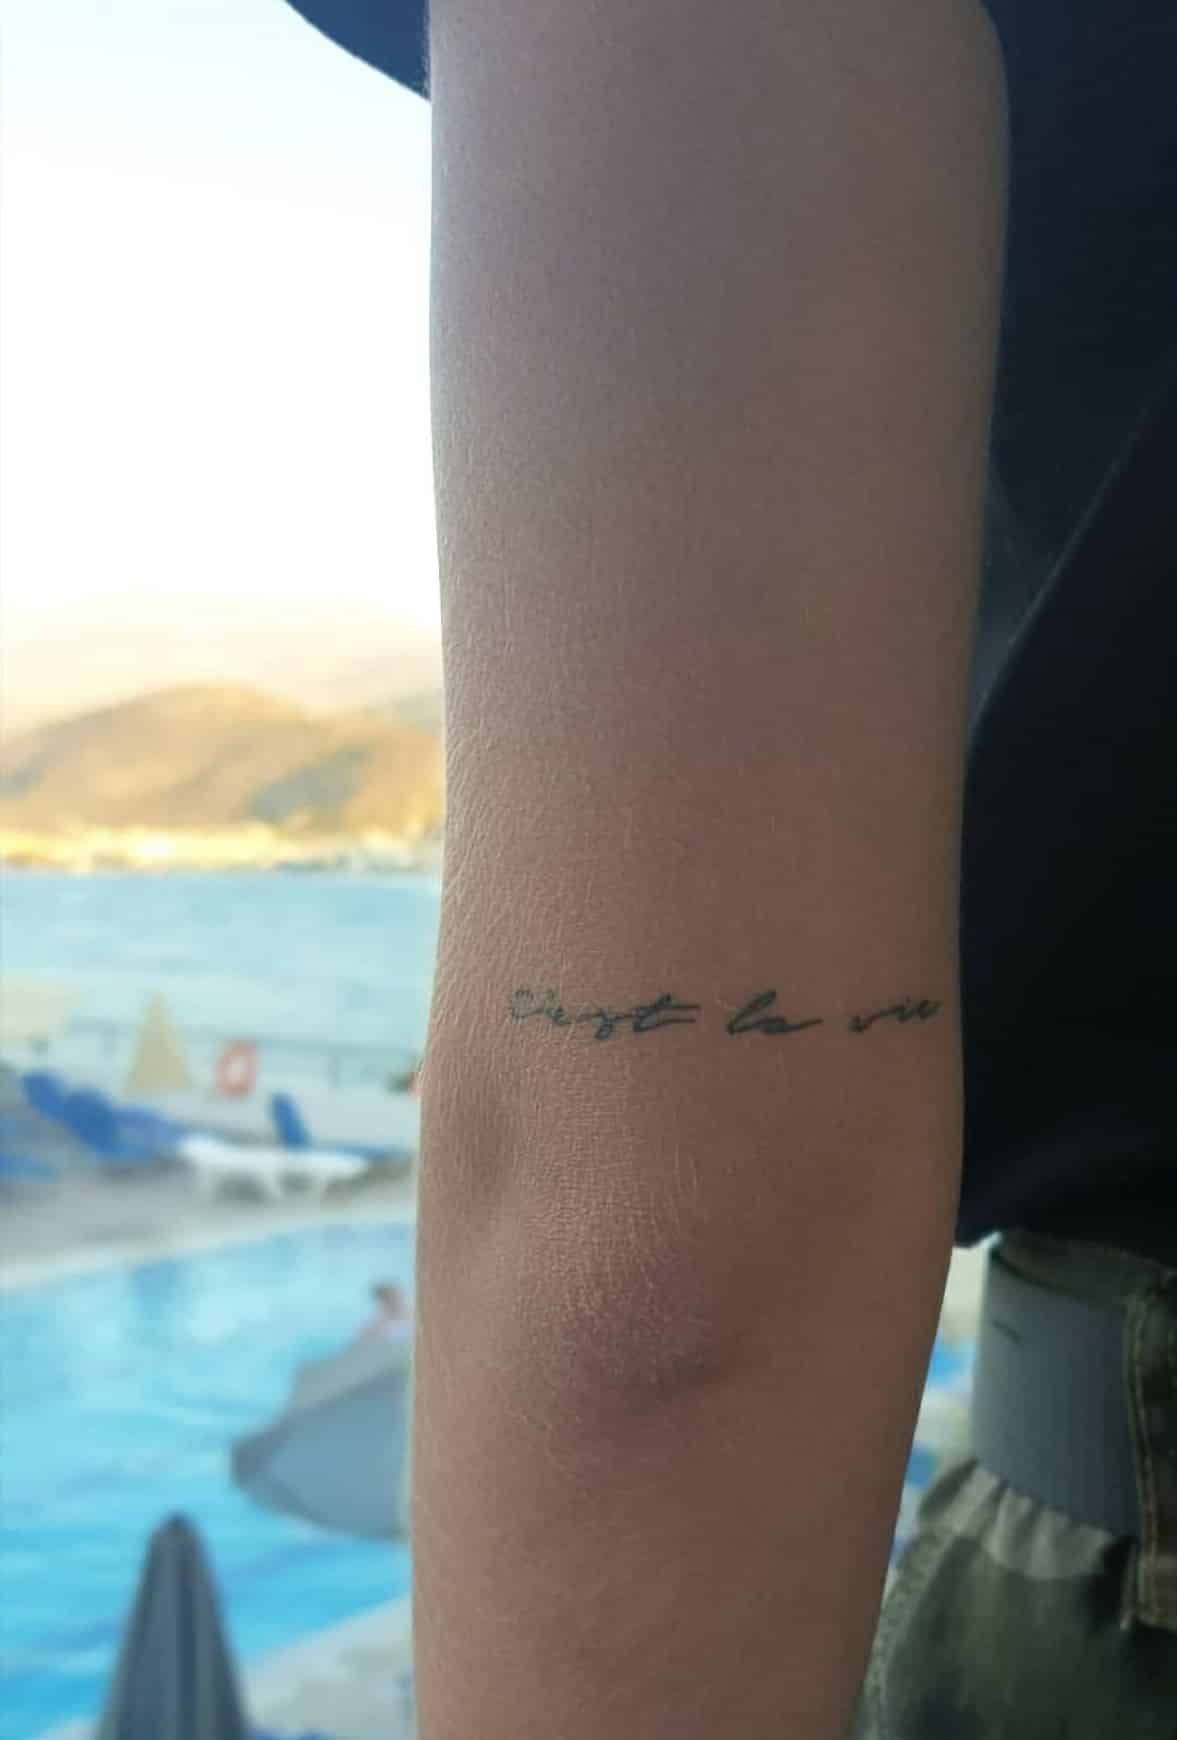 Frases para tatuarse - C'est la vie